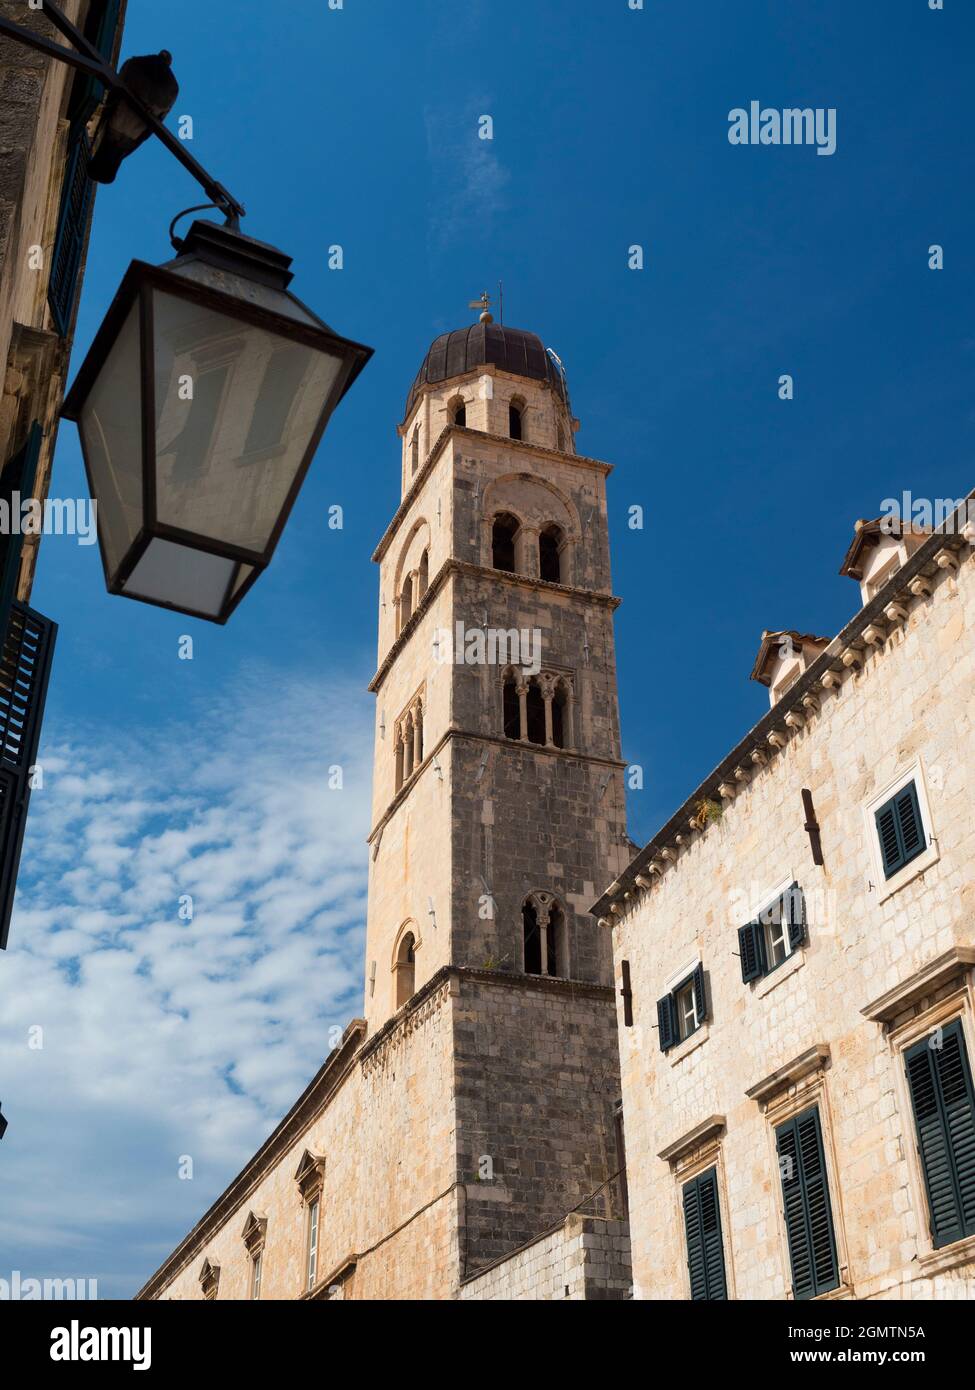 Dubrovnik, Kroatien - 10. September 2016 Dubrovnik ist eine historische kroatische Stadt an der Adria, in der Region Dalmatien. Ein UNESCO-Weltkulturerbe S Stockfoto